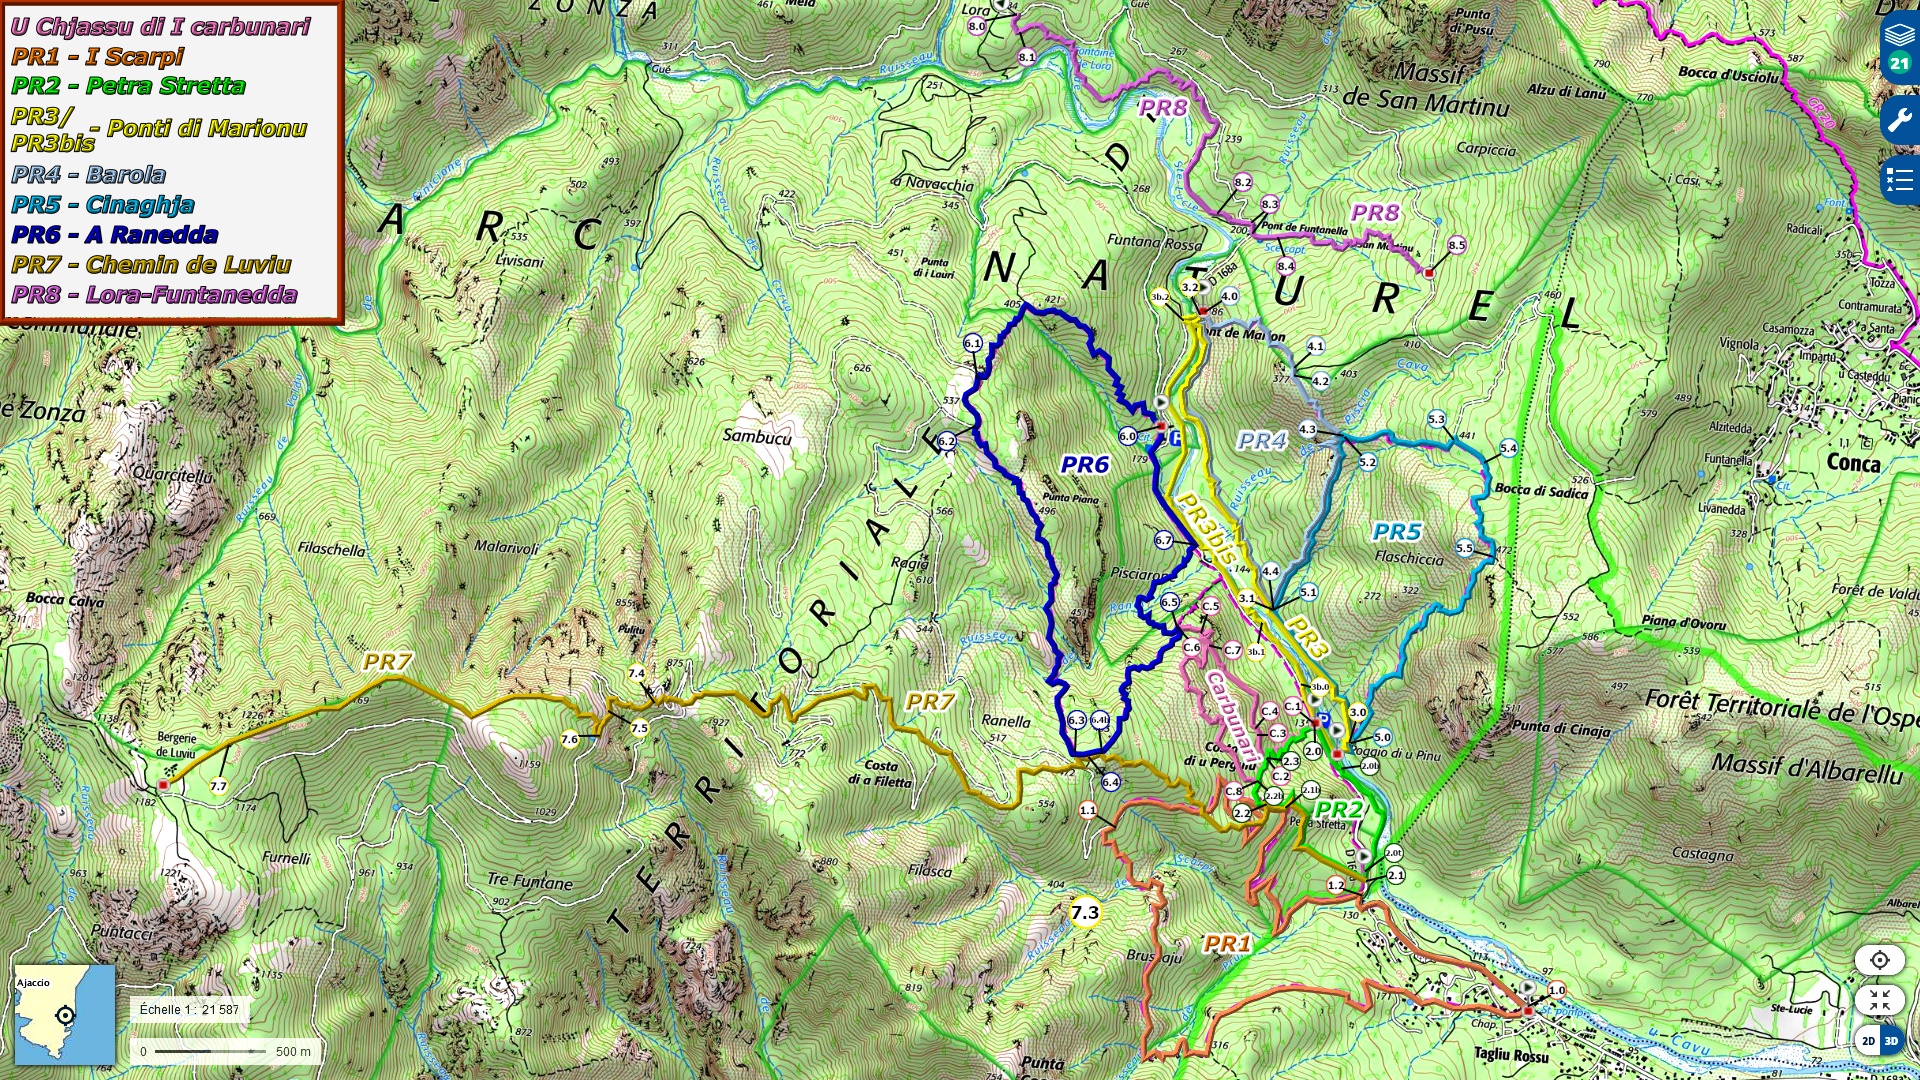 Carte IGN globale avec les parcours de basse vallée du Cavu